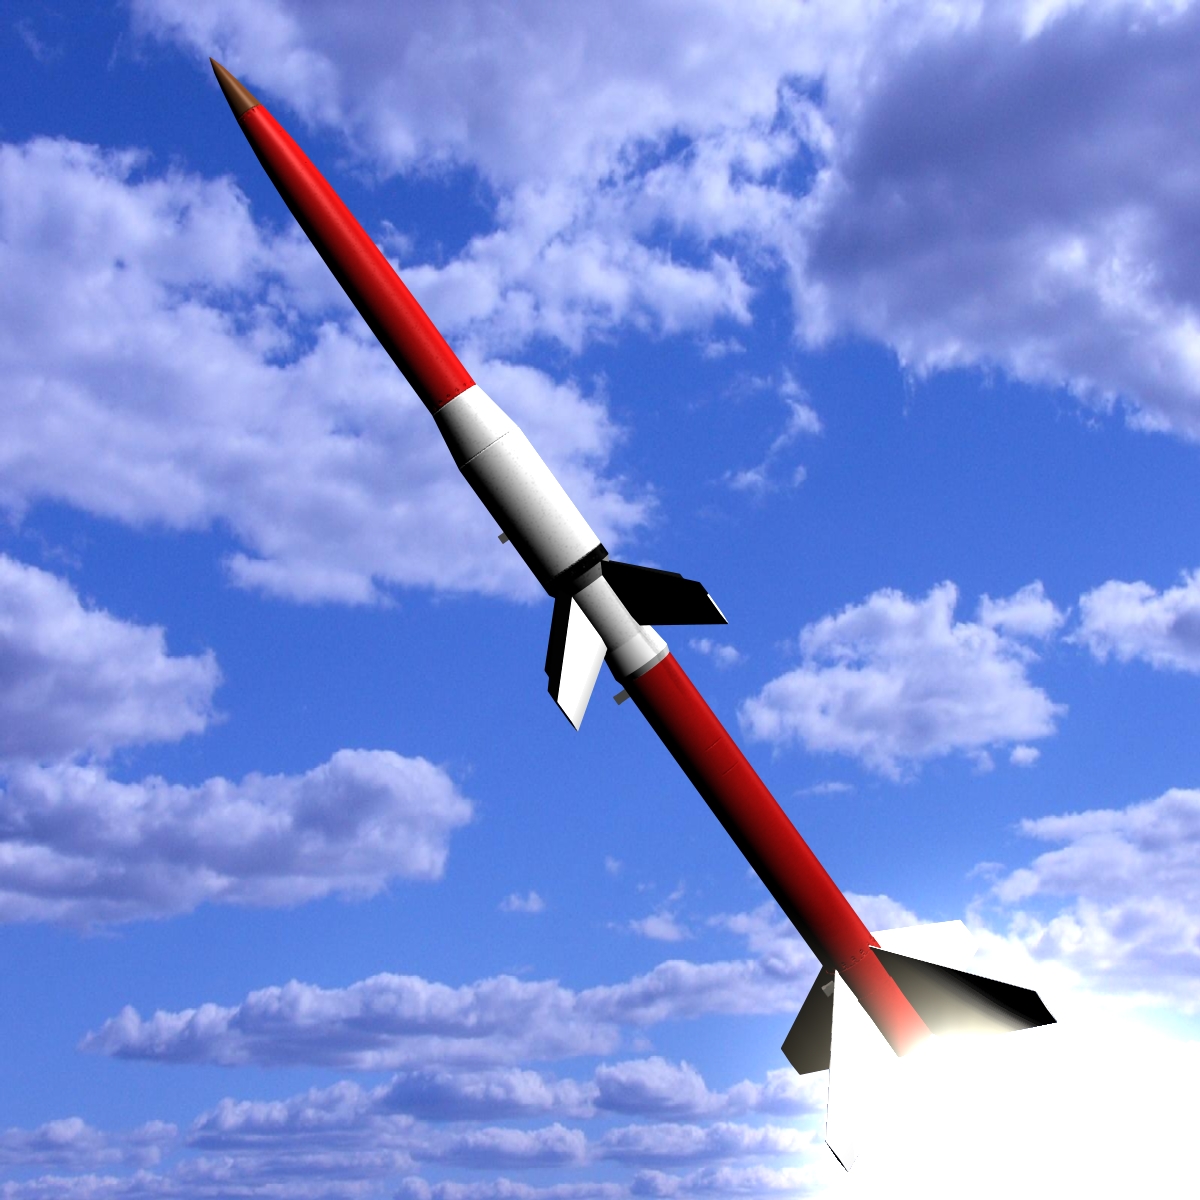 astrobee 200 rocket 3d model 3ds dxf fbx blend cob dae x other  obj 165941